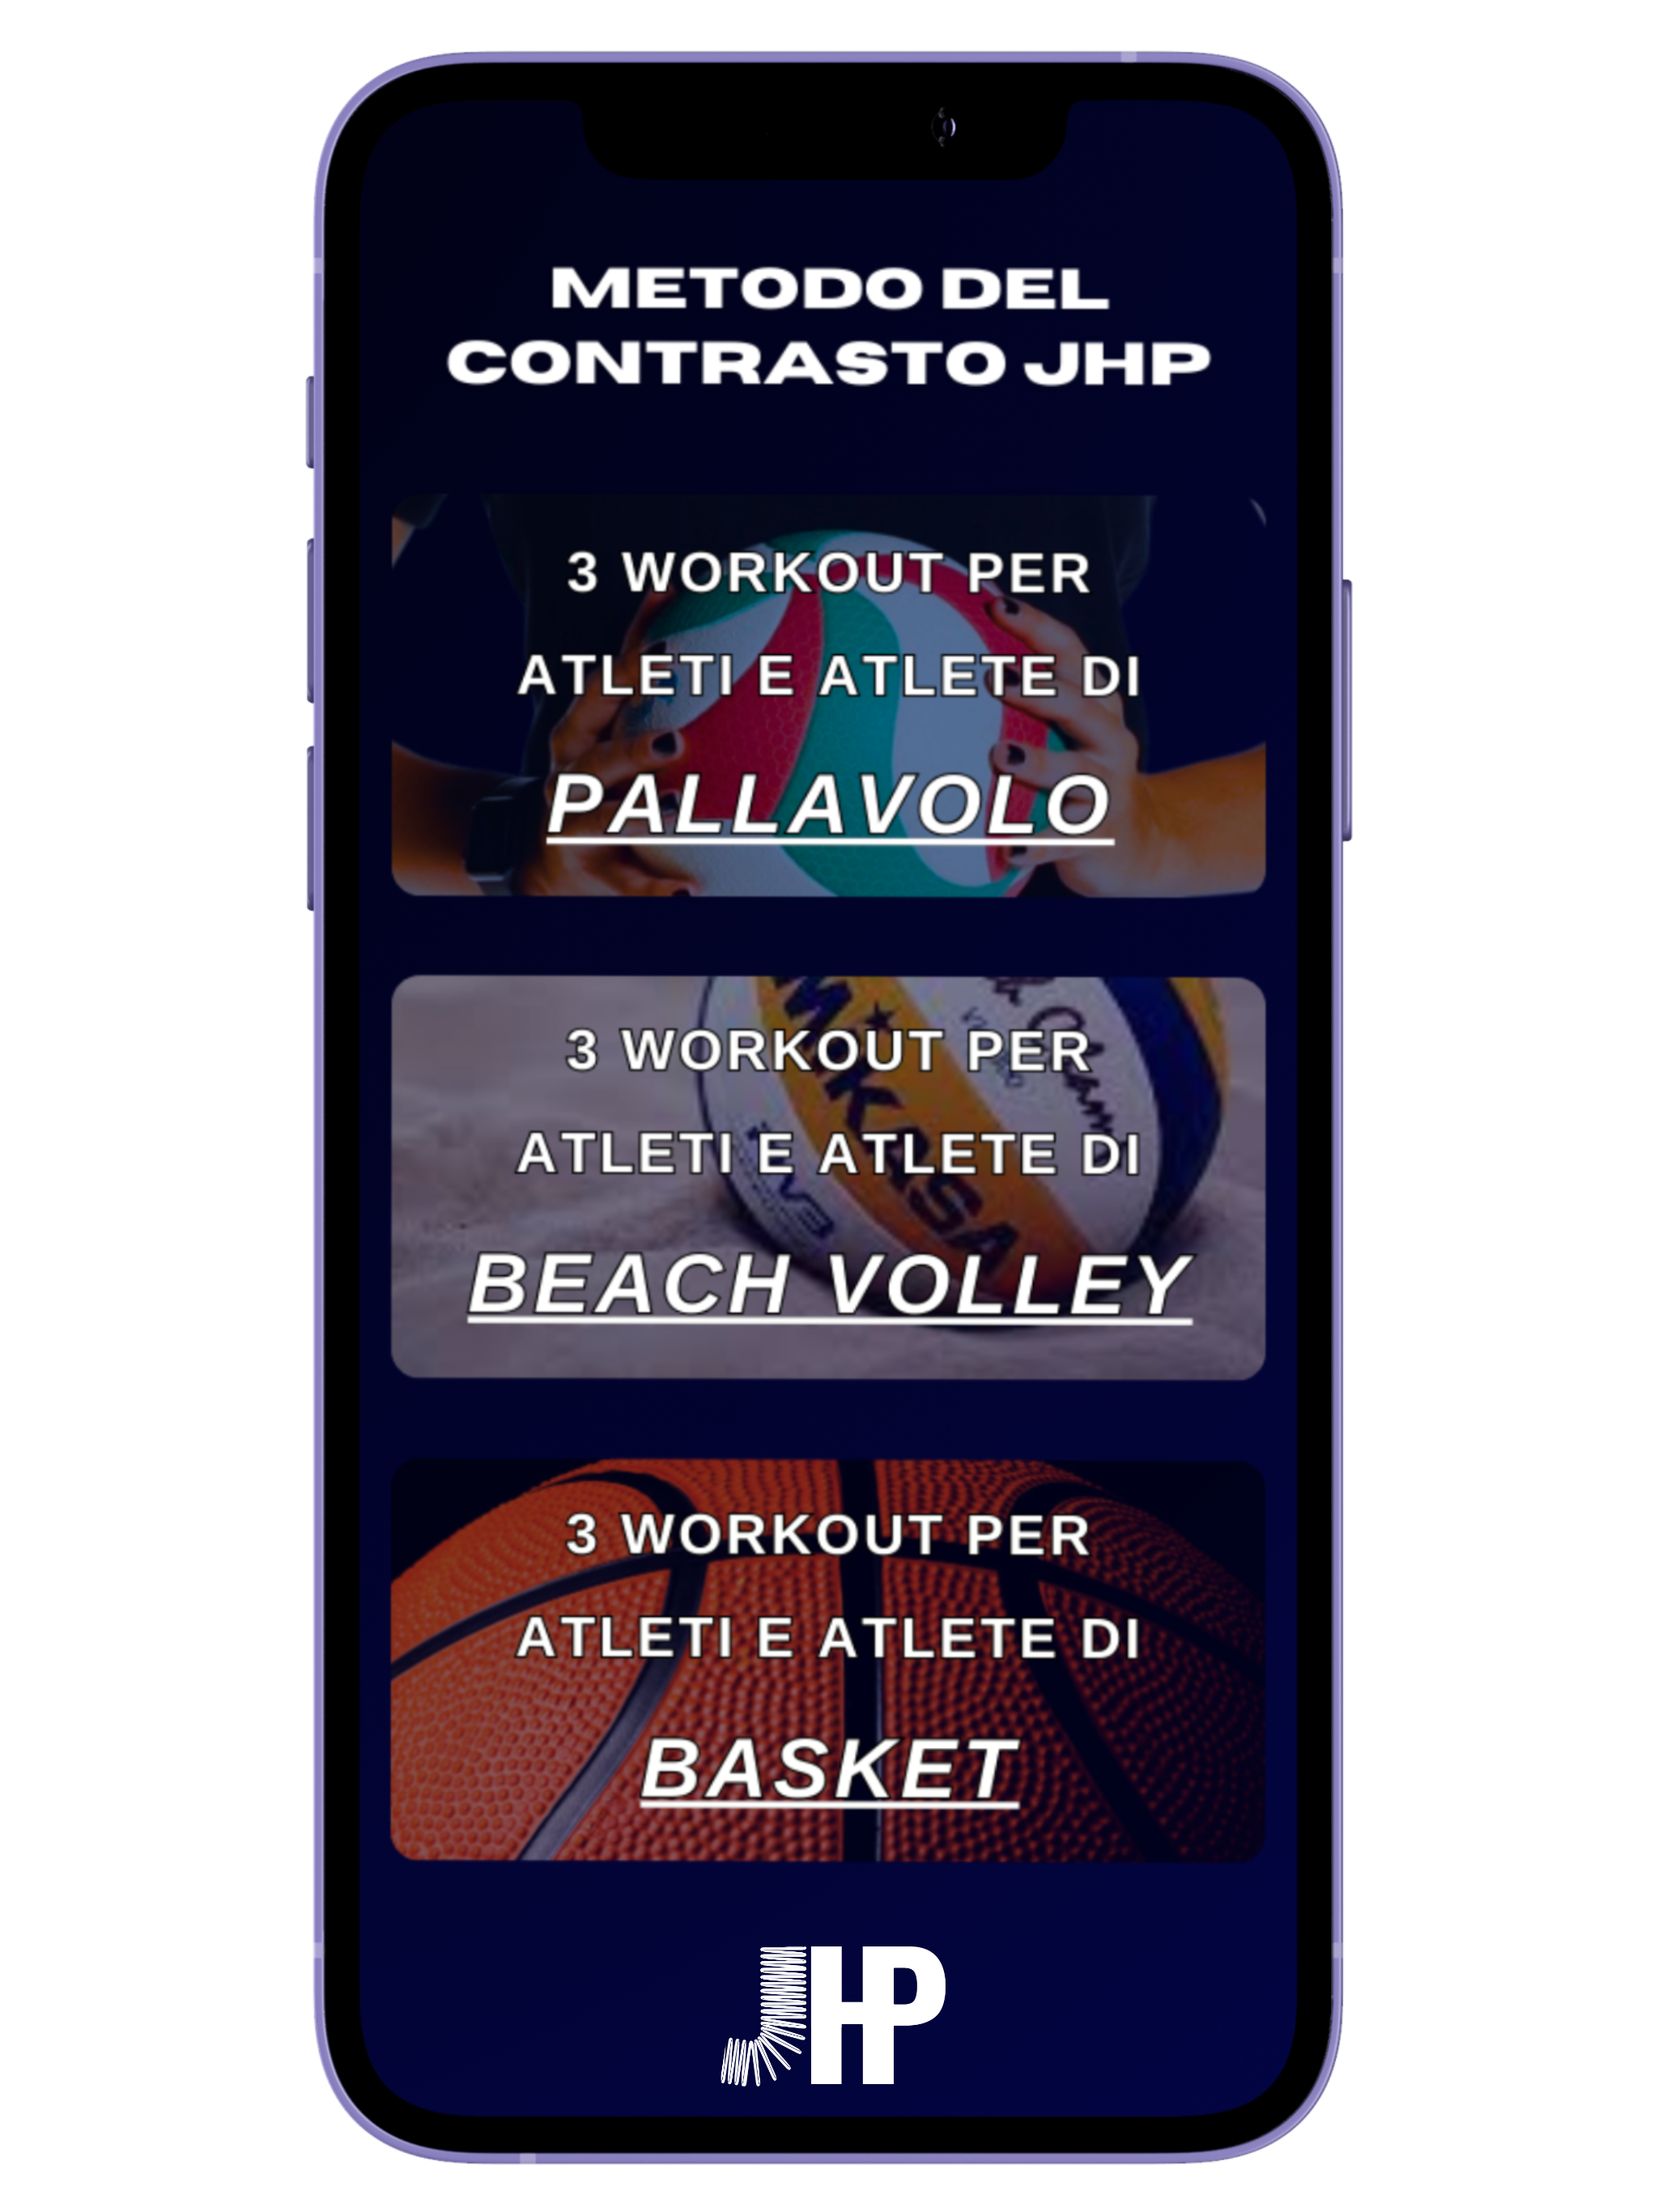 programma d'allenamento metodo contrasto francese salto jhp pallavolo basket beach volley